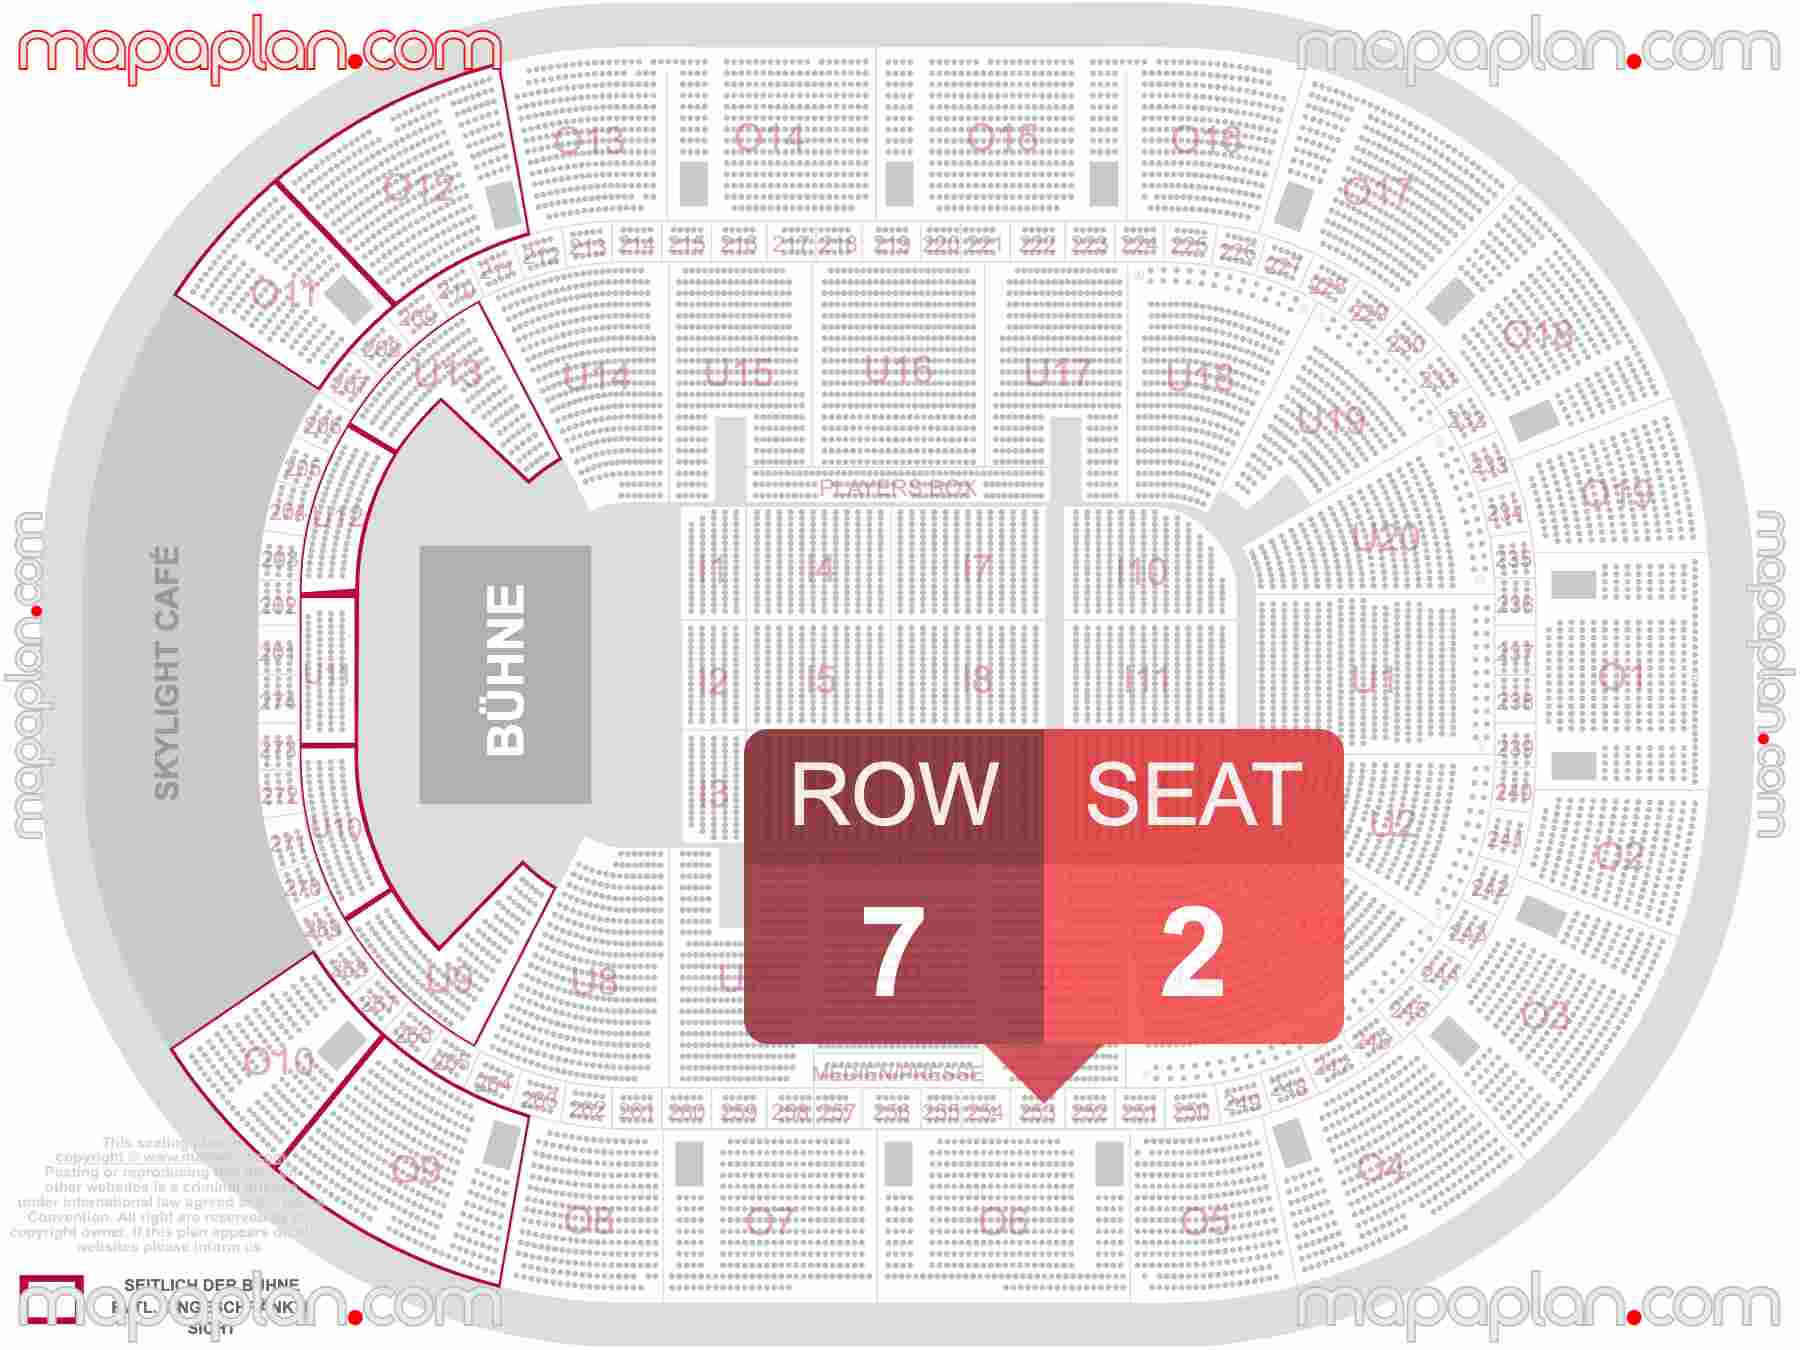 Hamburg Barclays Arena seating plan Concert Konzerte Sitzplan mit Sitzplatz & Reihennummerierung detailed seat numbers and row numbering plan with interactive map map layout